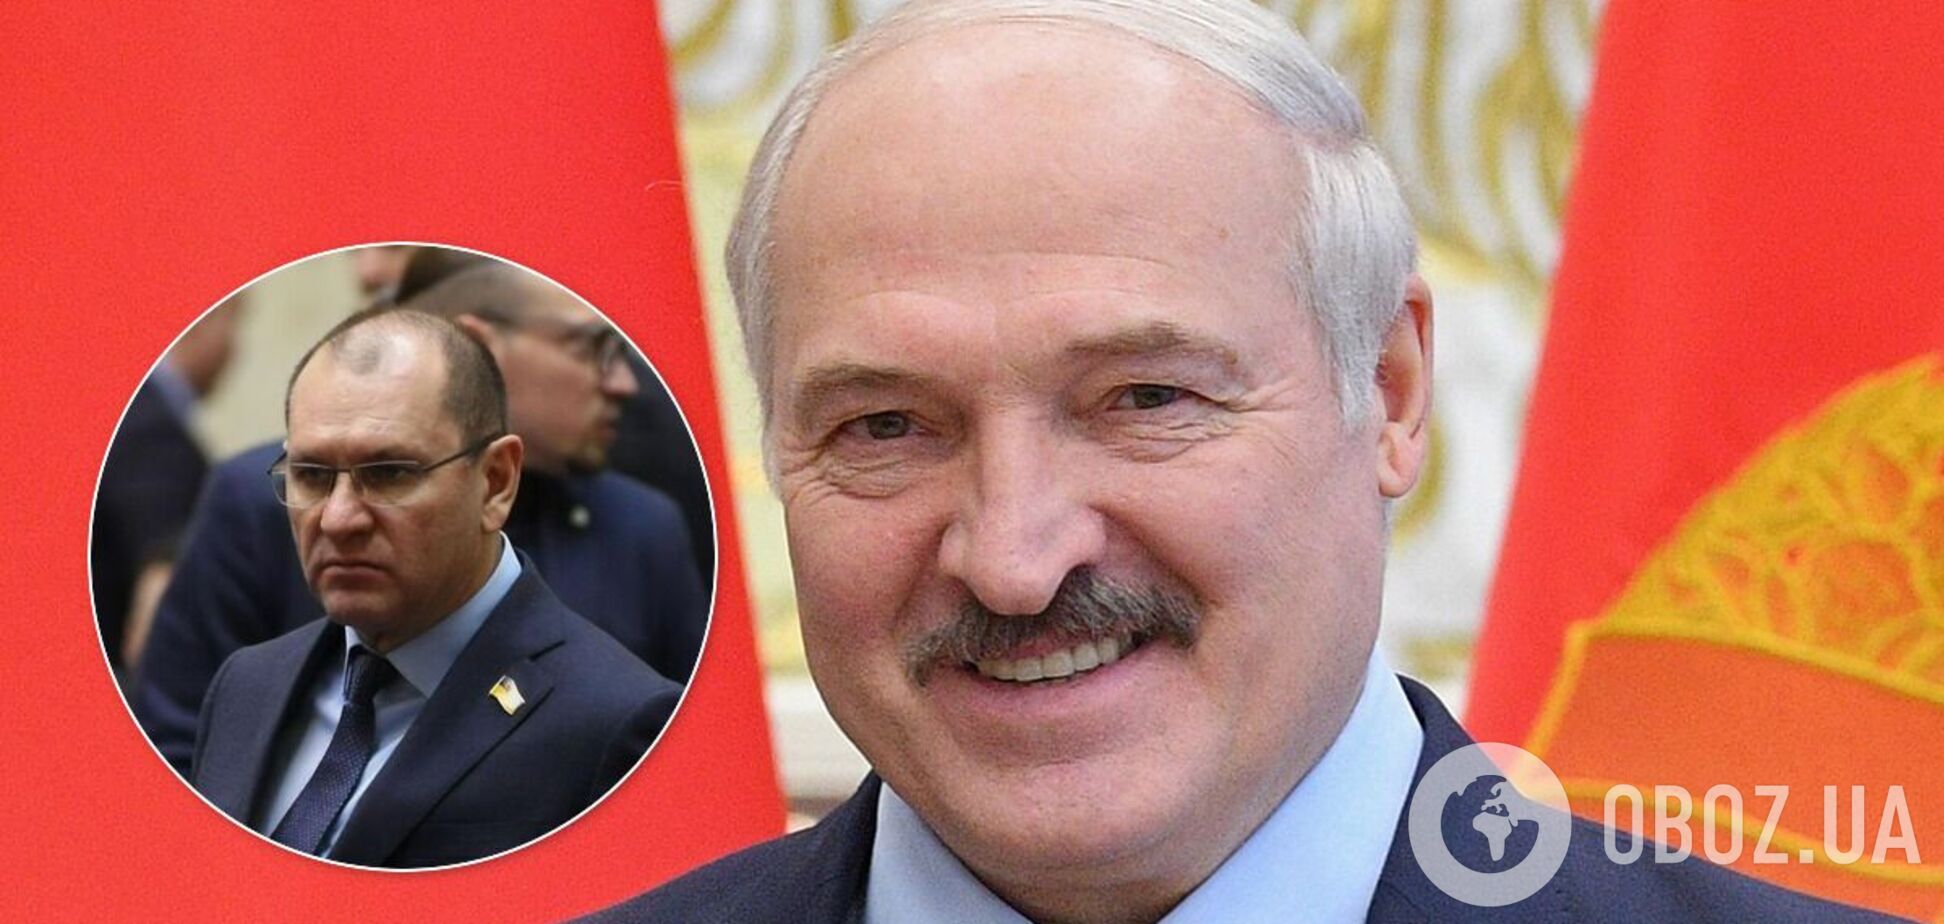 Нардеп от 'Слуги народа' досрочно поздравил Лукашенко с победой, 'забыв' о митингах